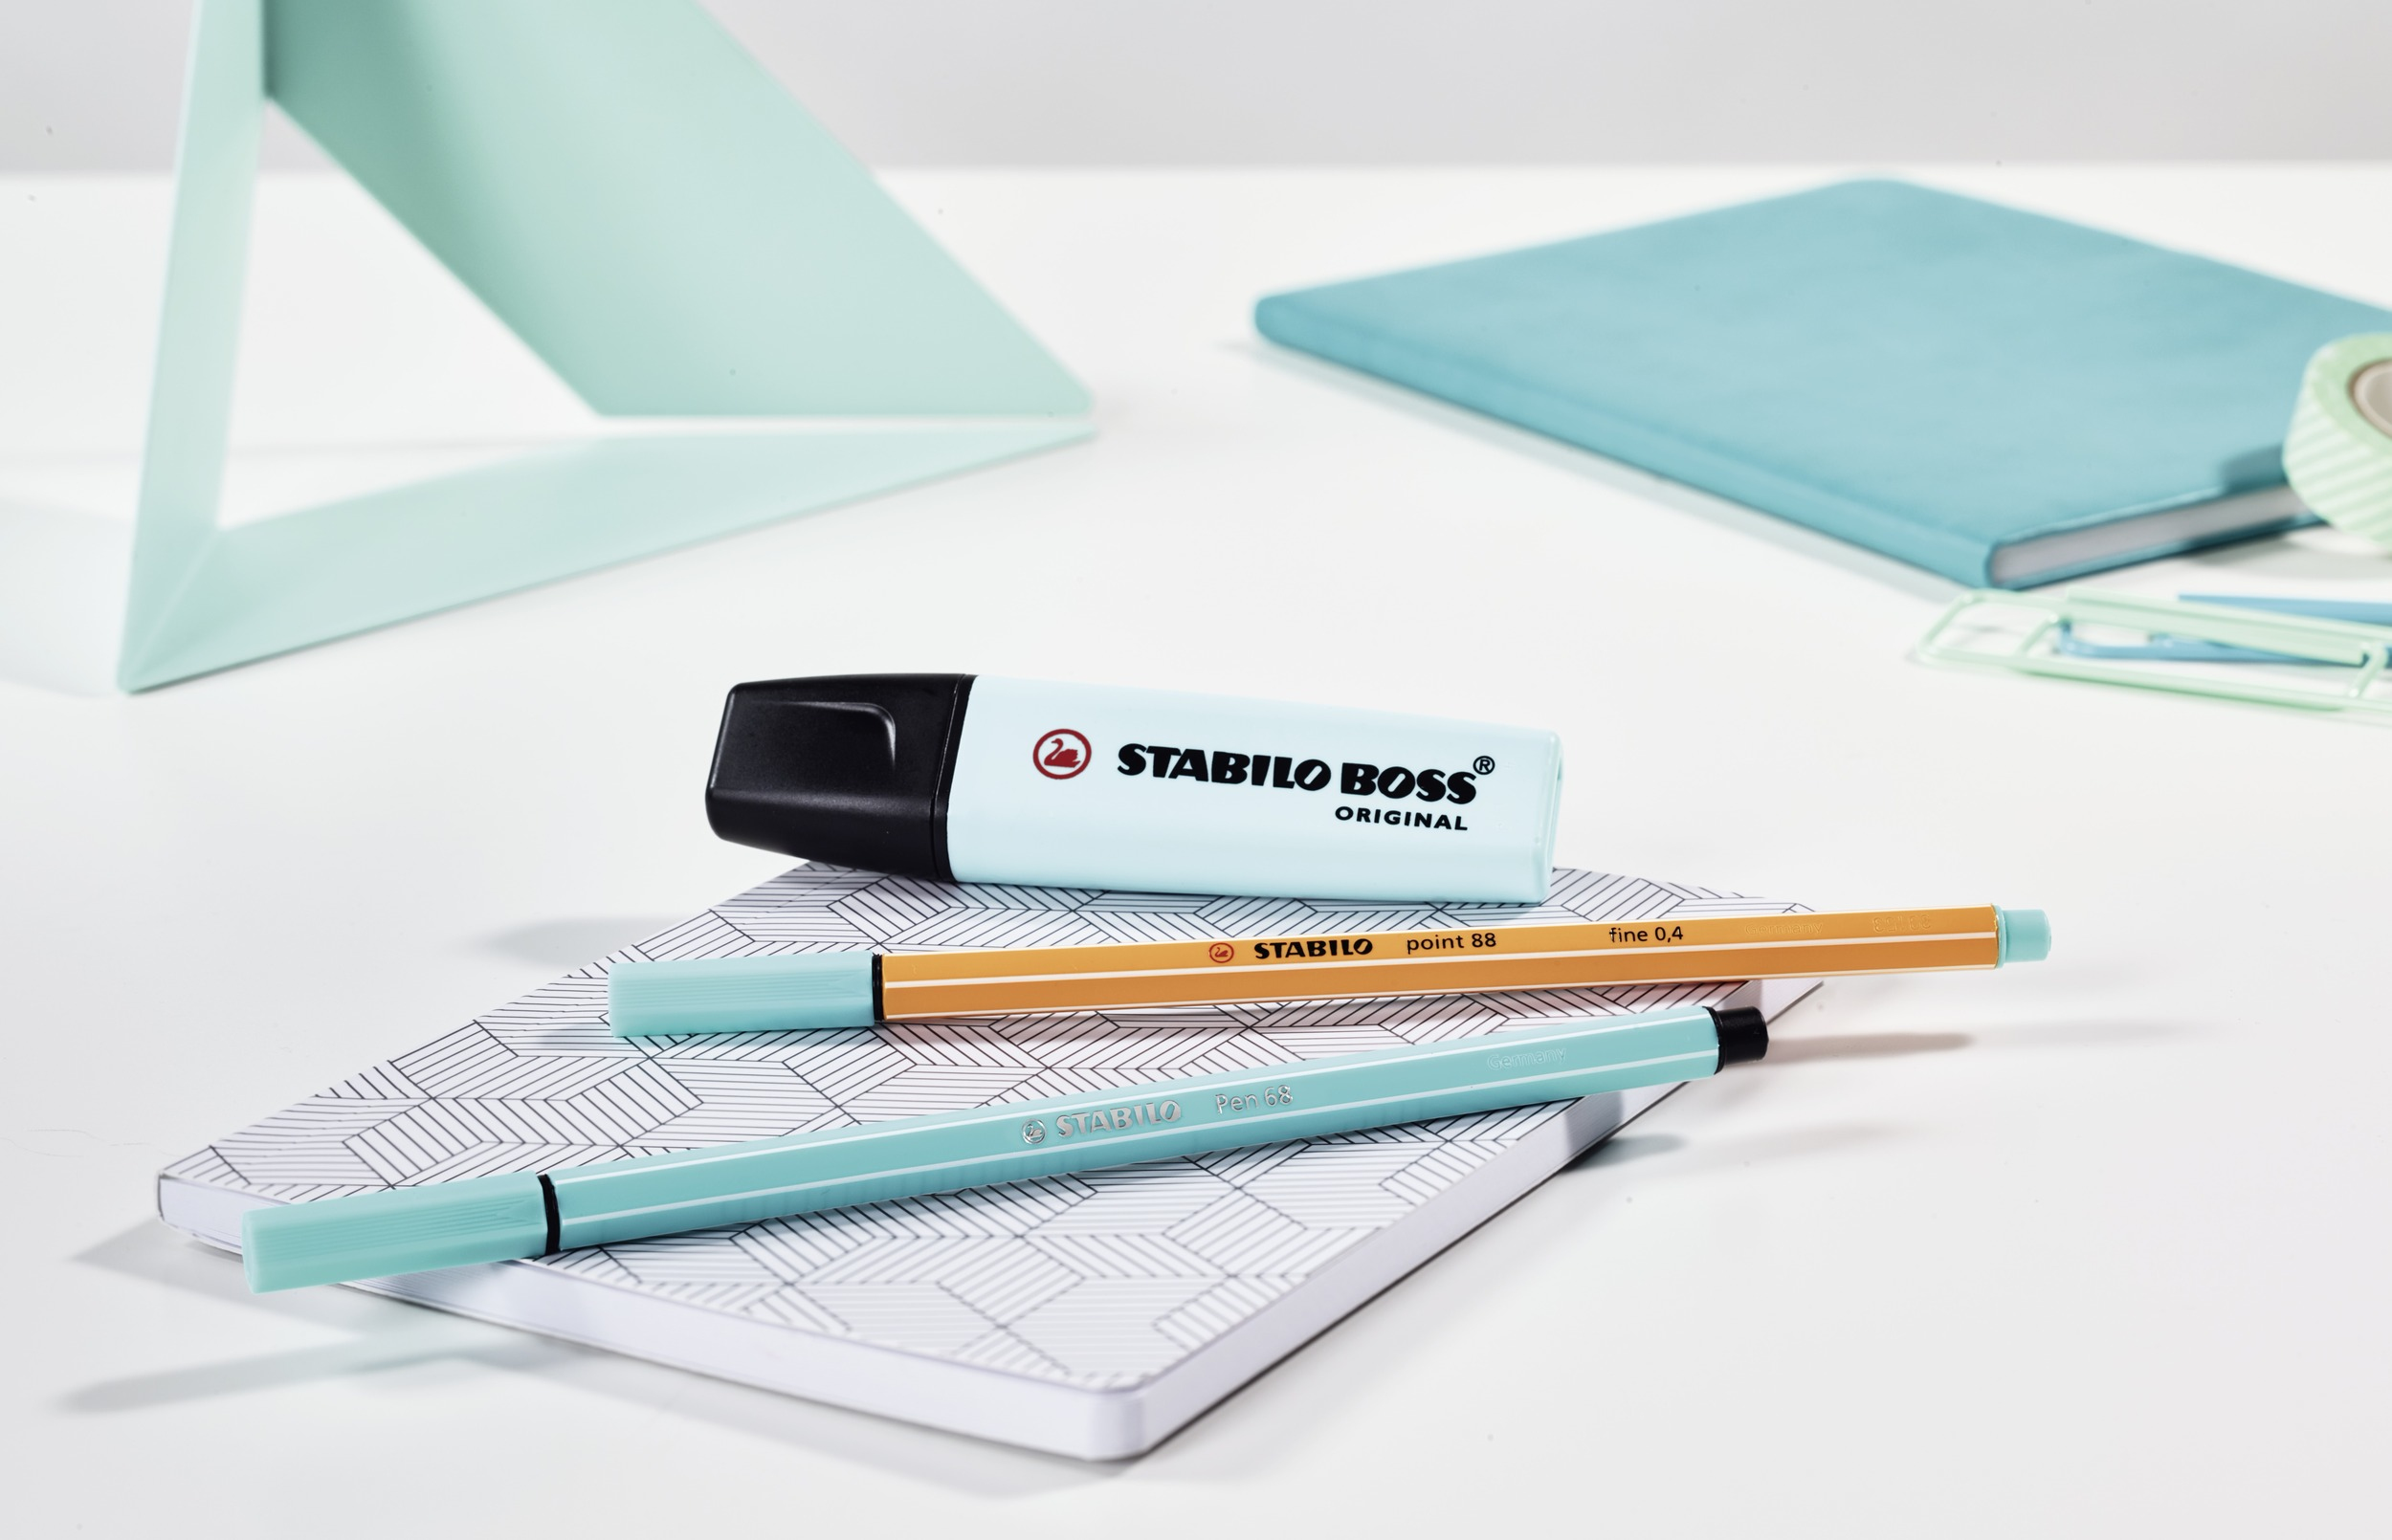 ✓ Stabilo Boss 70 Pastel Pack de 4 Feutres Fluo couleur en stock -  123CONSOMMABLES